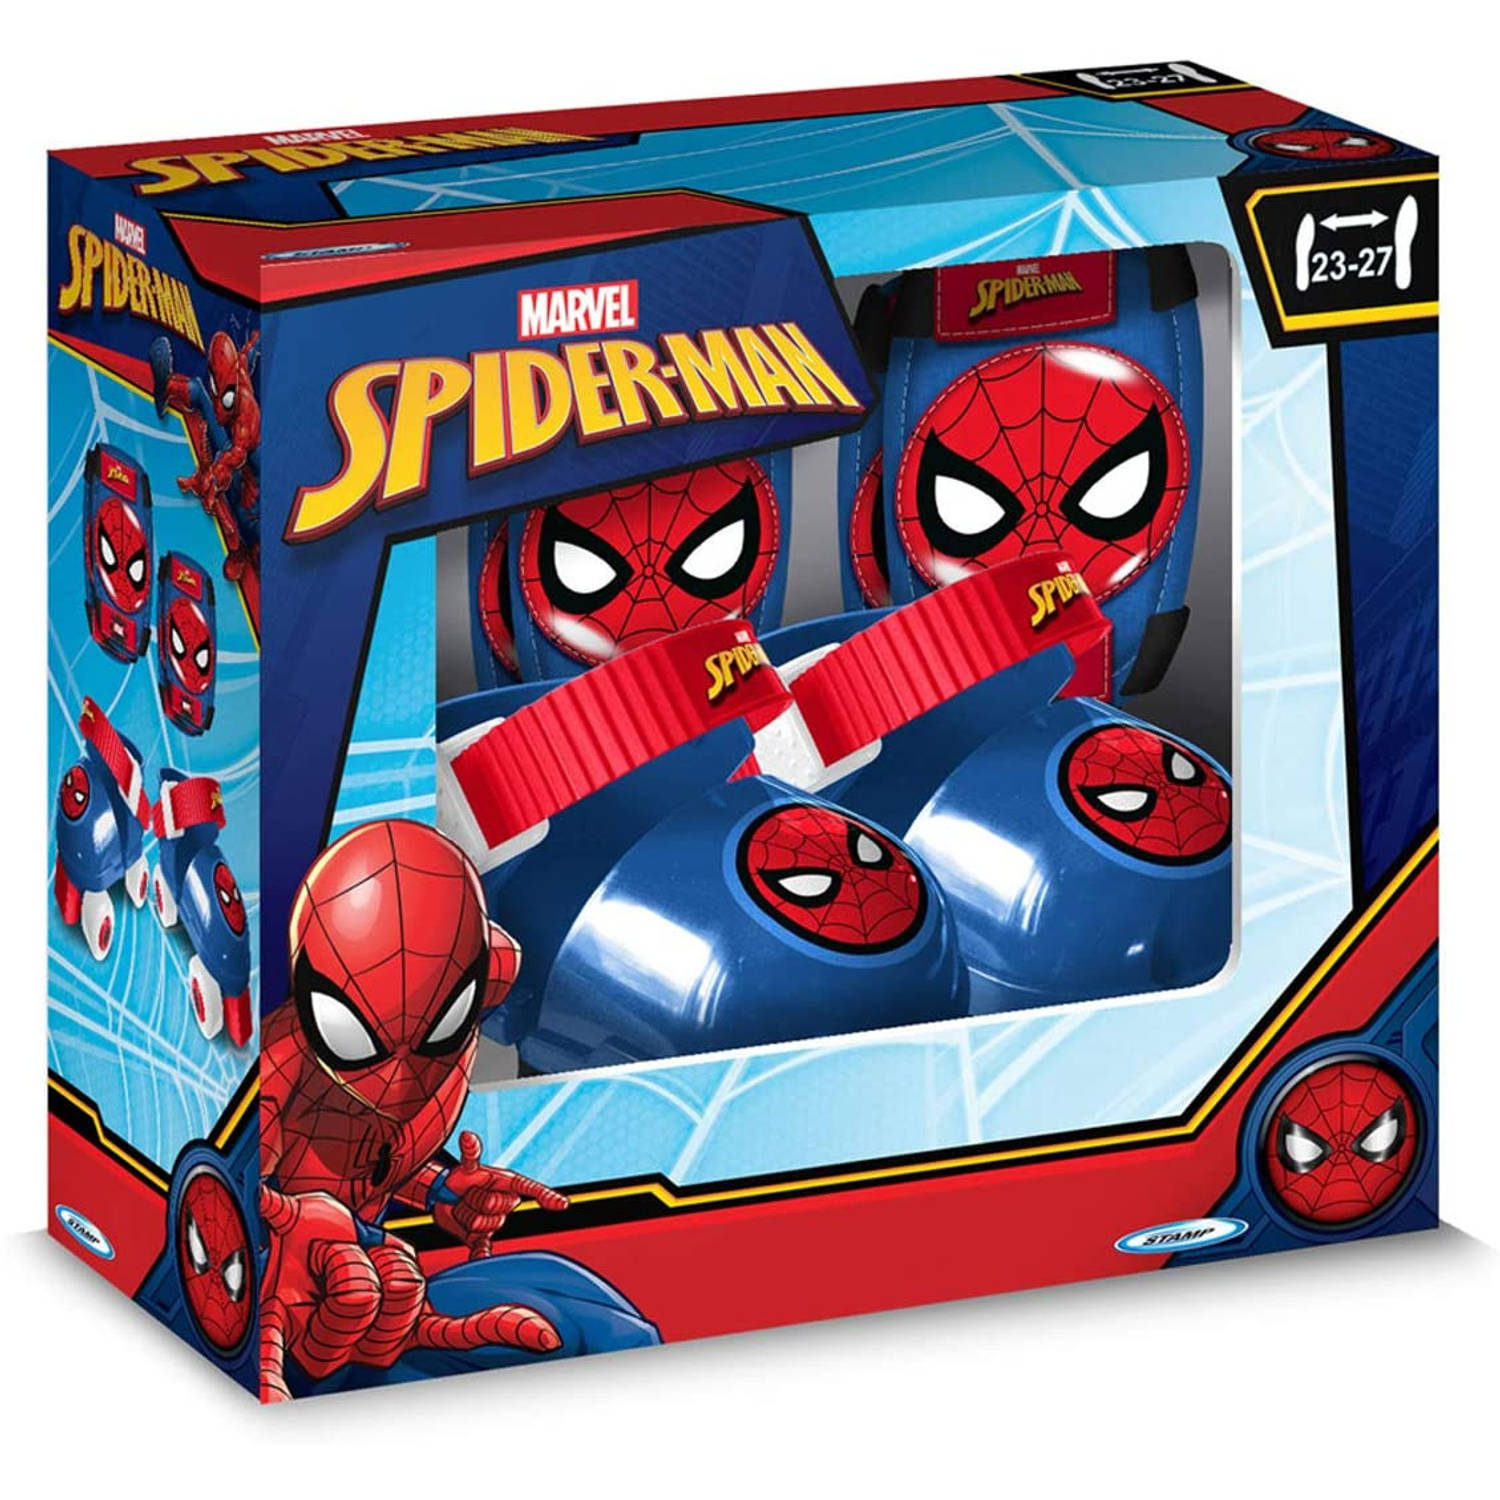 kaas Te Vriend Marvel rolschaatsen Spider-Man jongens blauw/rood mt 23-27 | Blokker